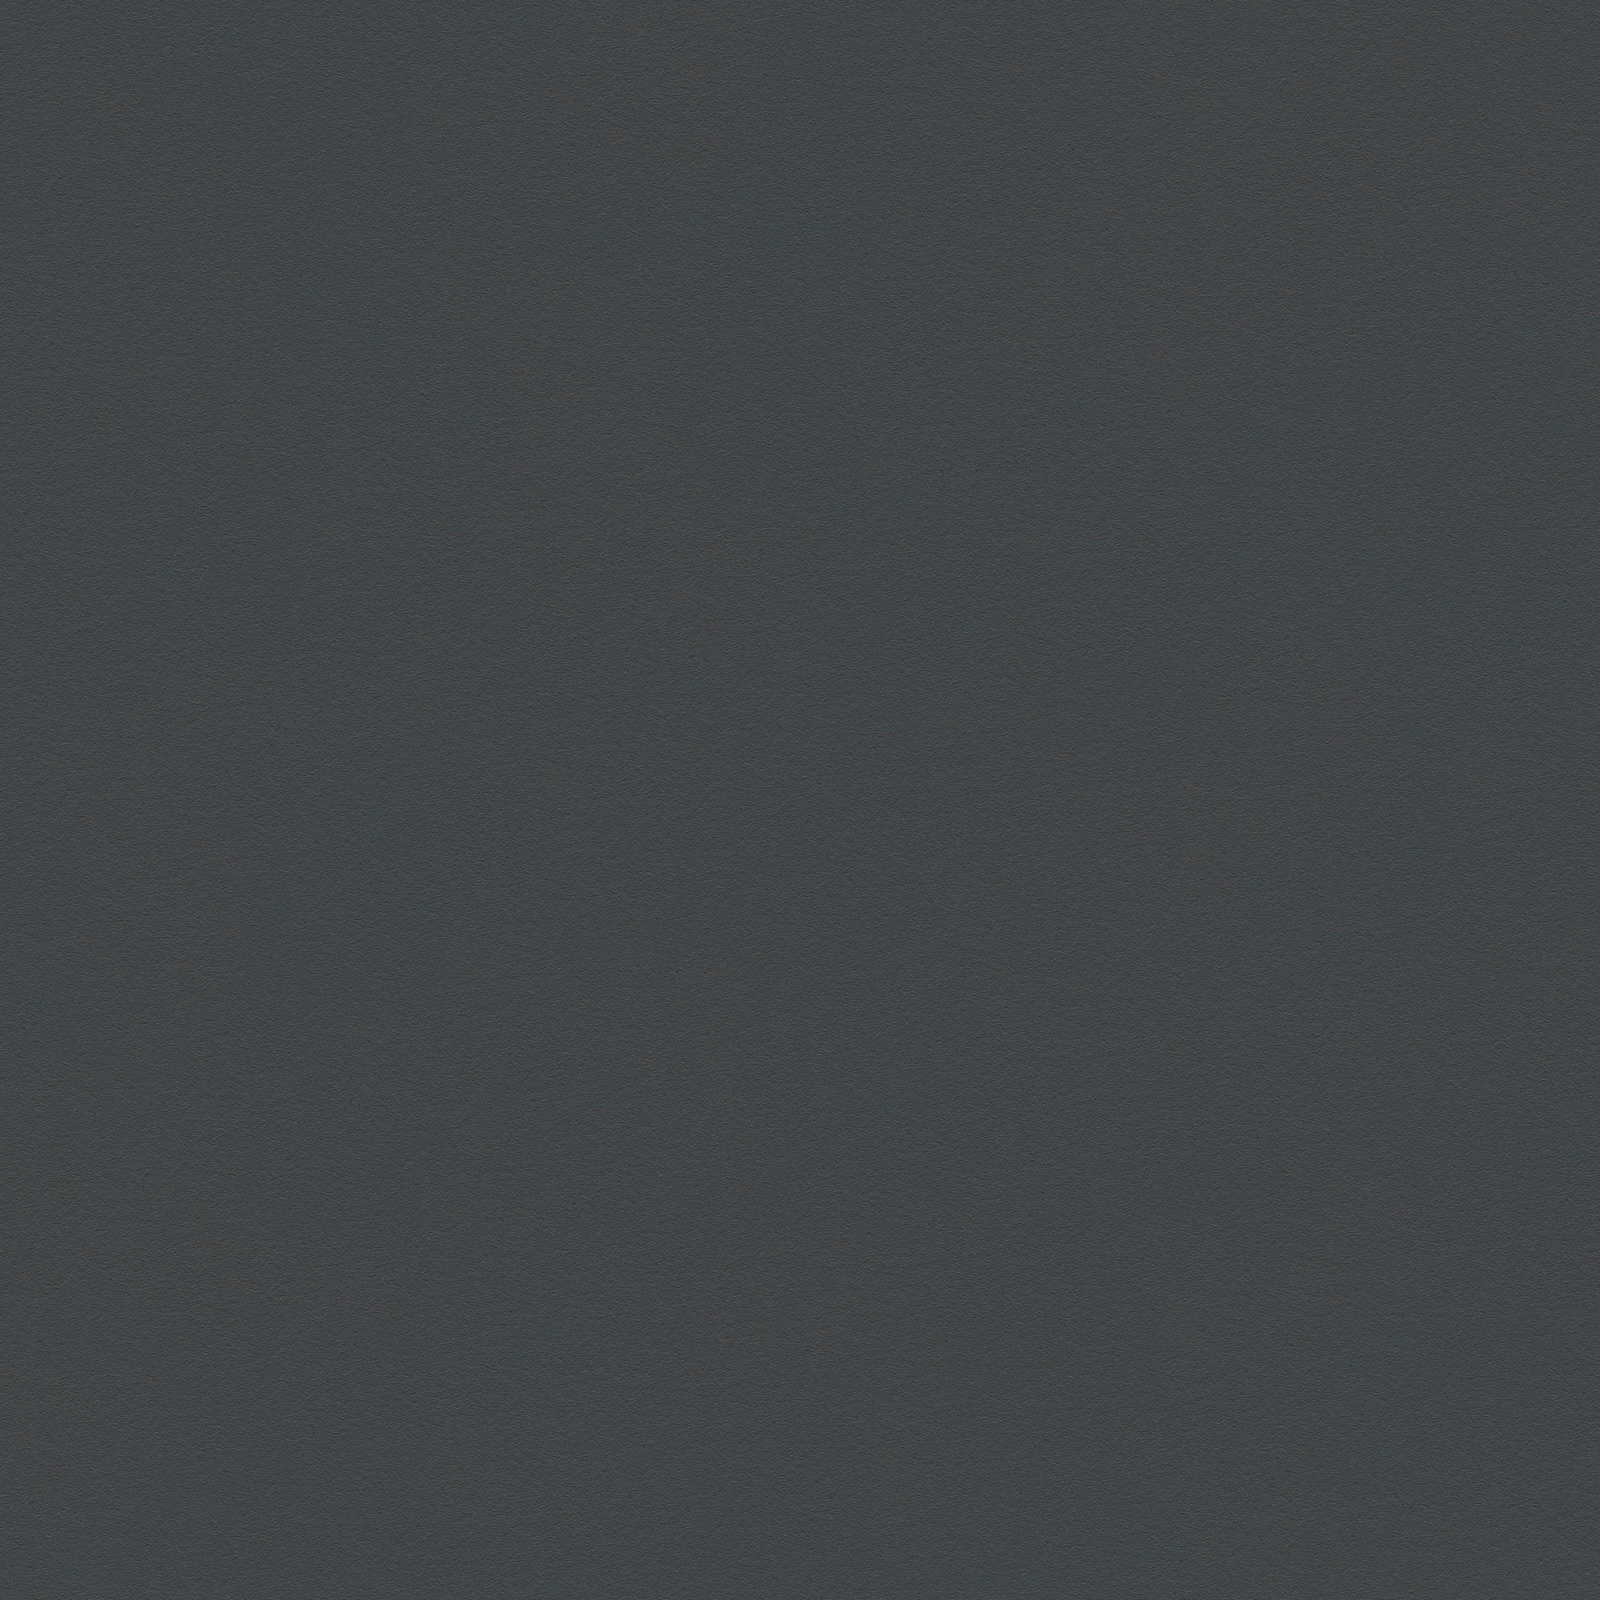         Schwarze Uni-Vliestapete mit seidenmatter Oberfläche
    